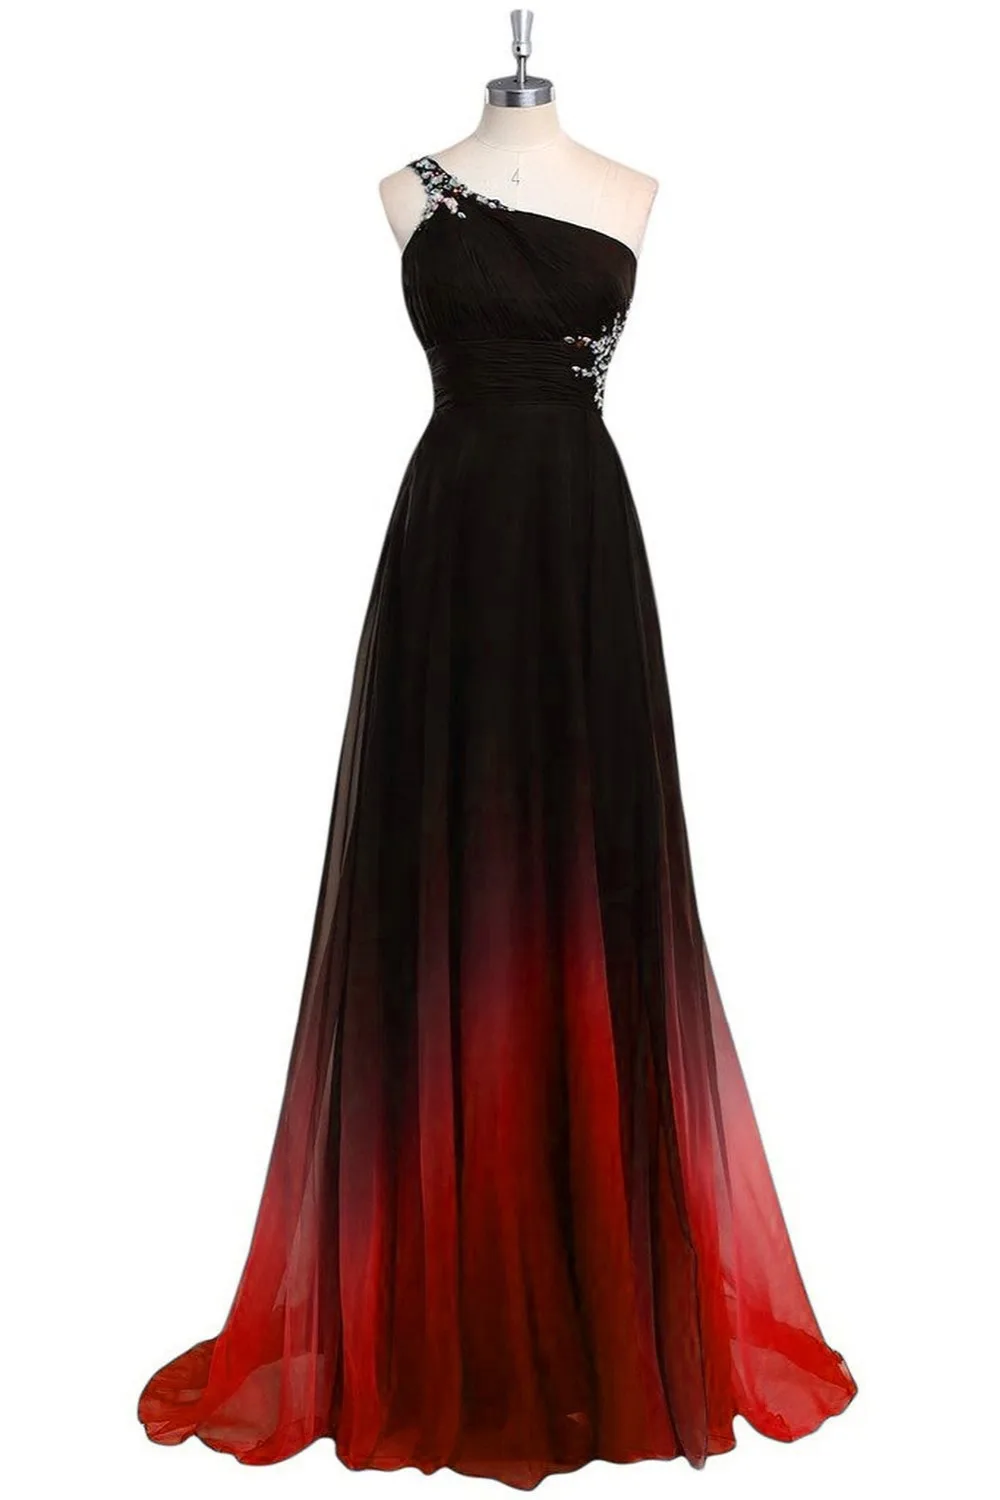 Ruthshen Вечерние платья Длинные одно плечо градиент черный красный бисером шифон платье для выпускного вечера дешево реальное фото Vestido Longo